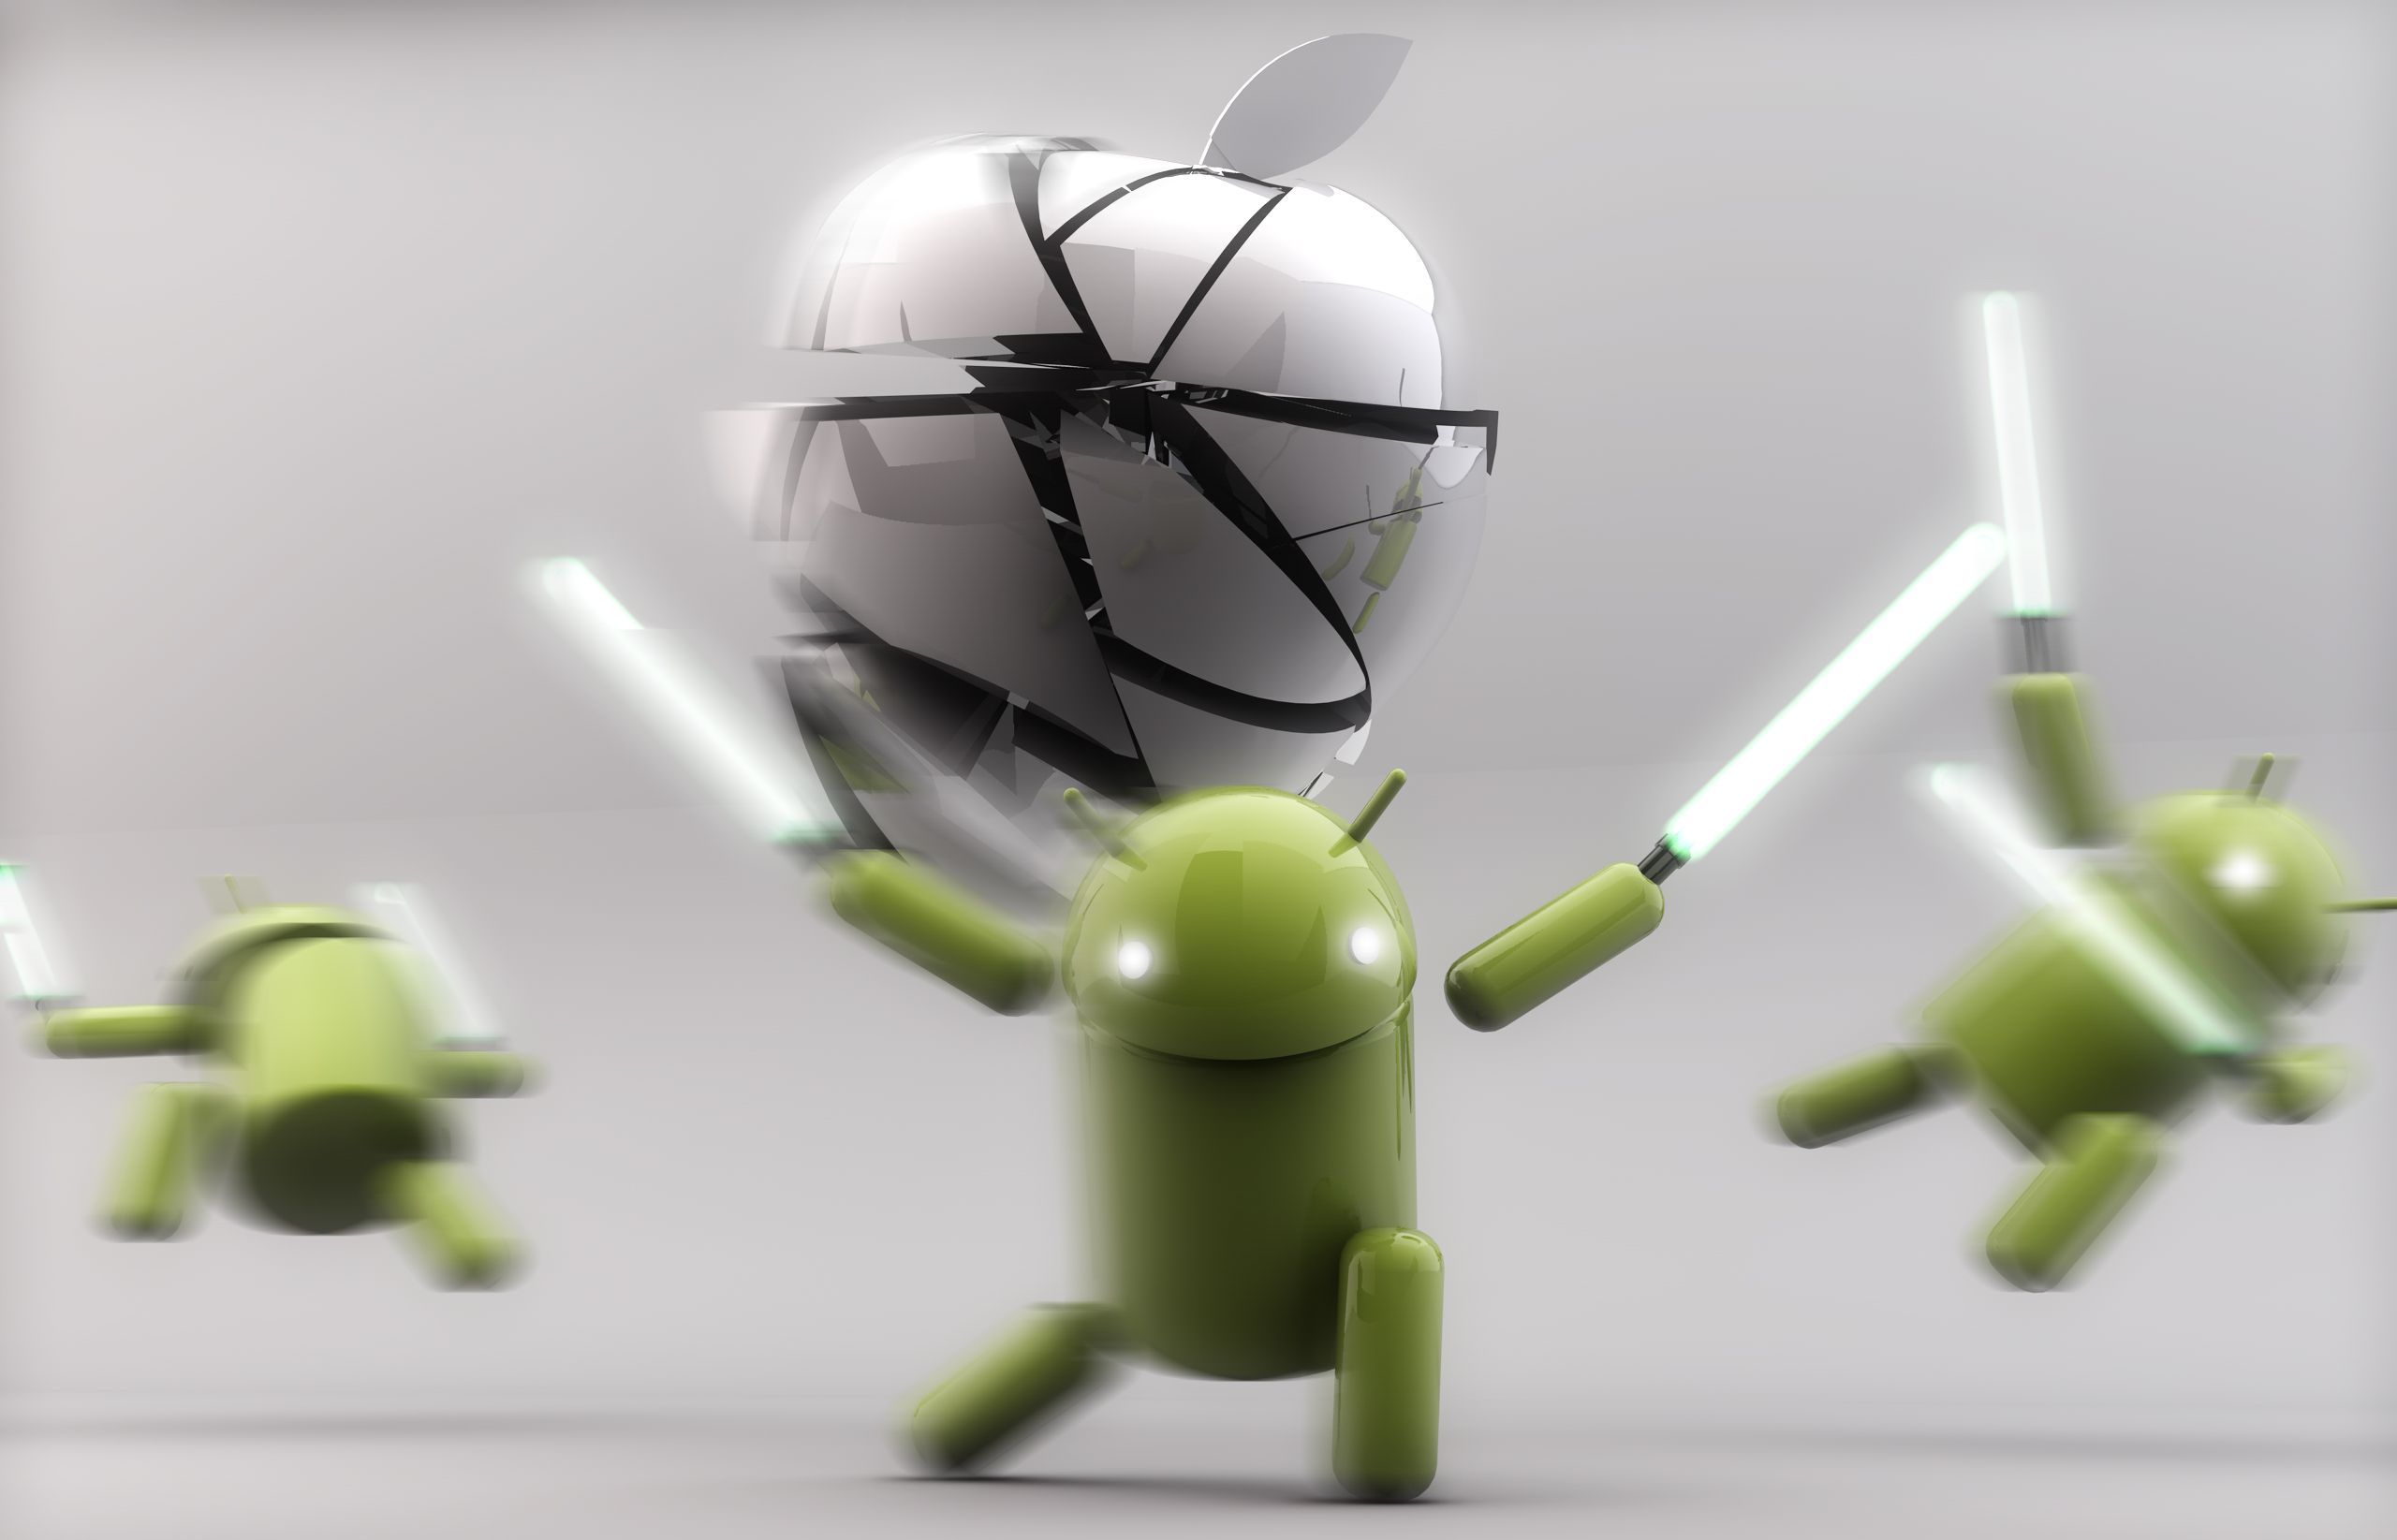 7 motivi per cui Android 5.0 Lollipop è meglio di iOS8